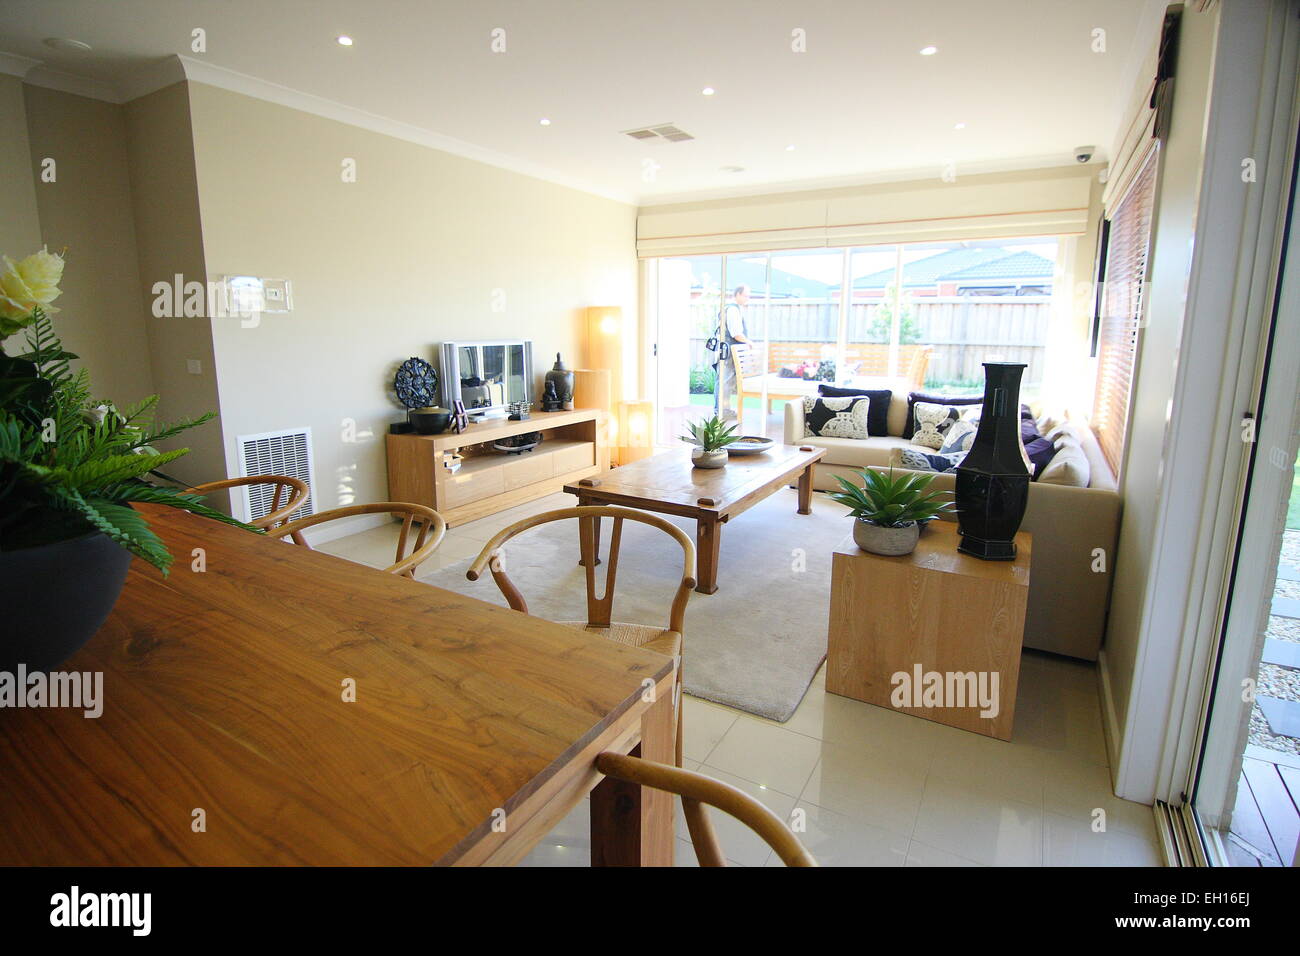 Speisesaal und Aufenthaltsraum mit hölzernen Möbeln Stockfoto